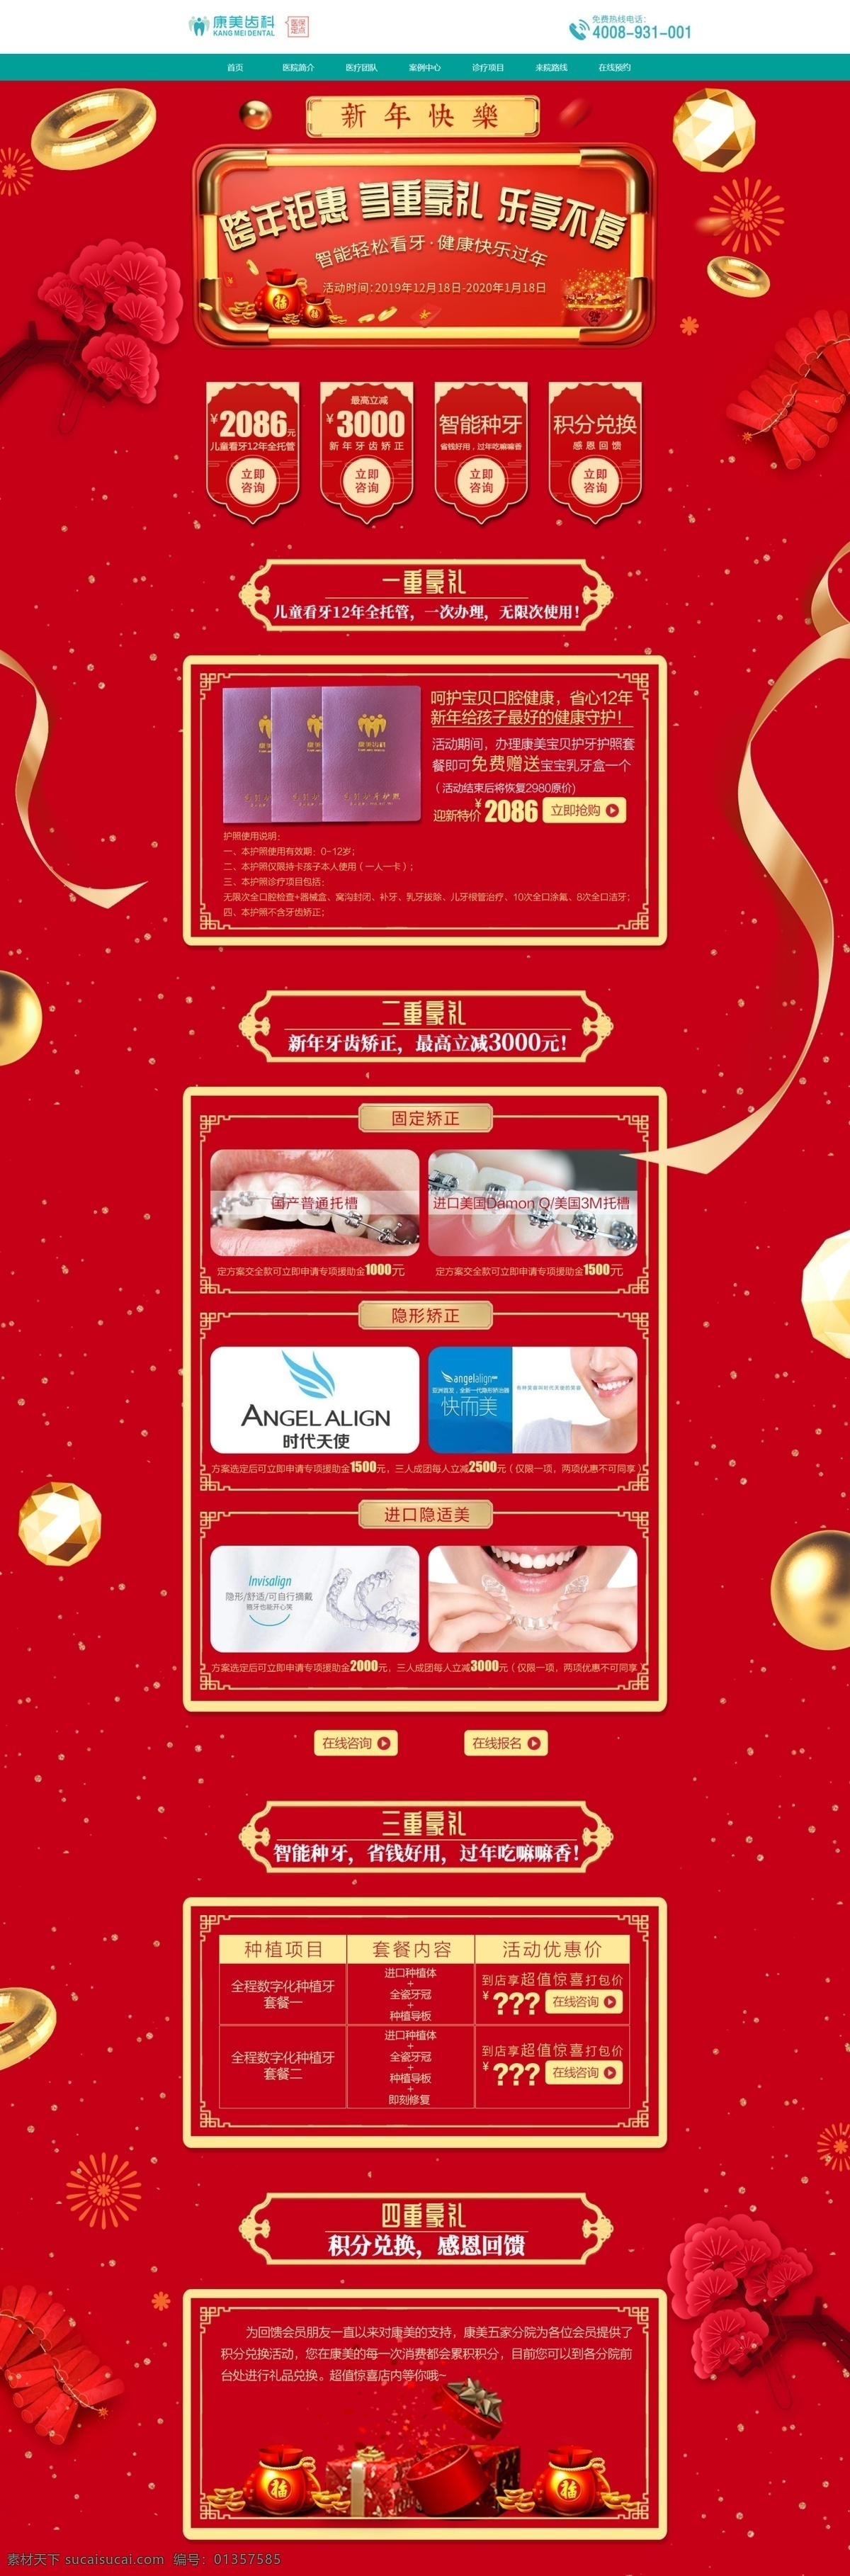 跨年钜惠 多重豪礼 乐享不停 牙科 口腔 跨年 促销豪礼 智能看牙 健康 快乐 过年 web 界面设计 中文模板